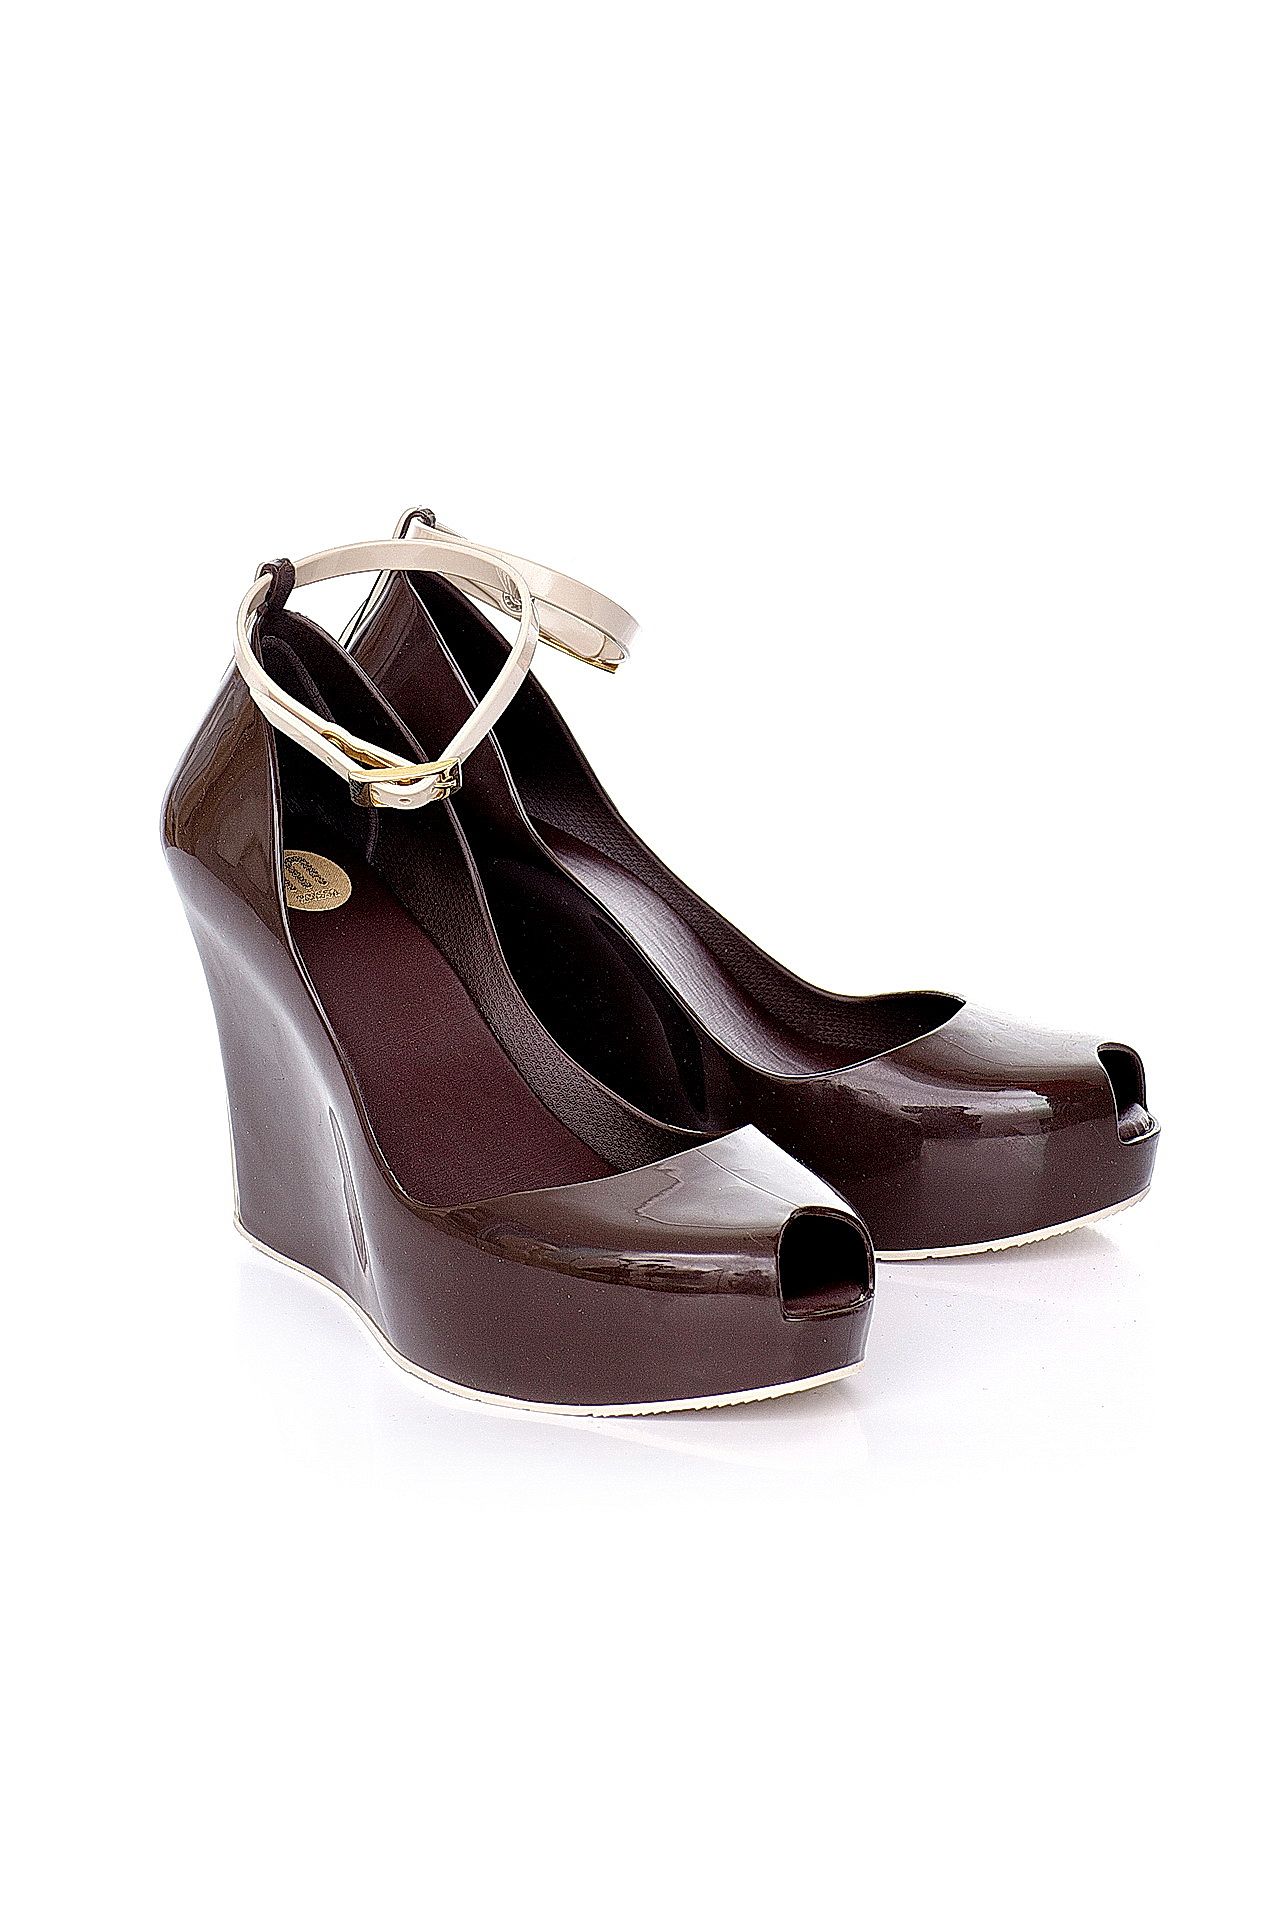 Обувь женская Босоножки MELISSA (30574/11.2). Купить за 5450 руб.